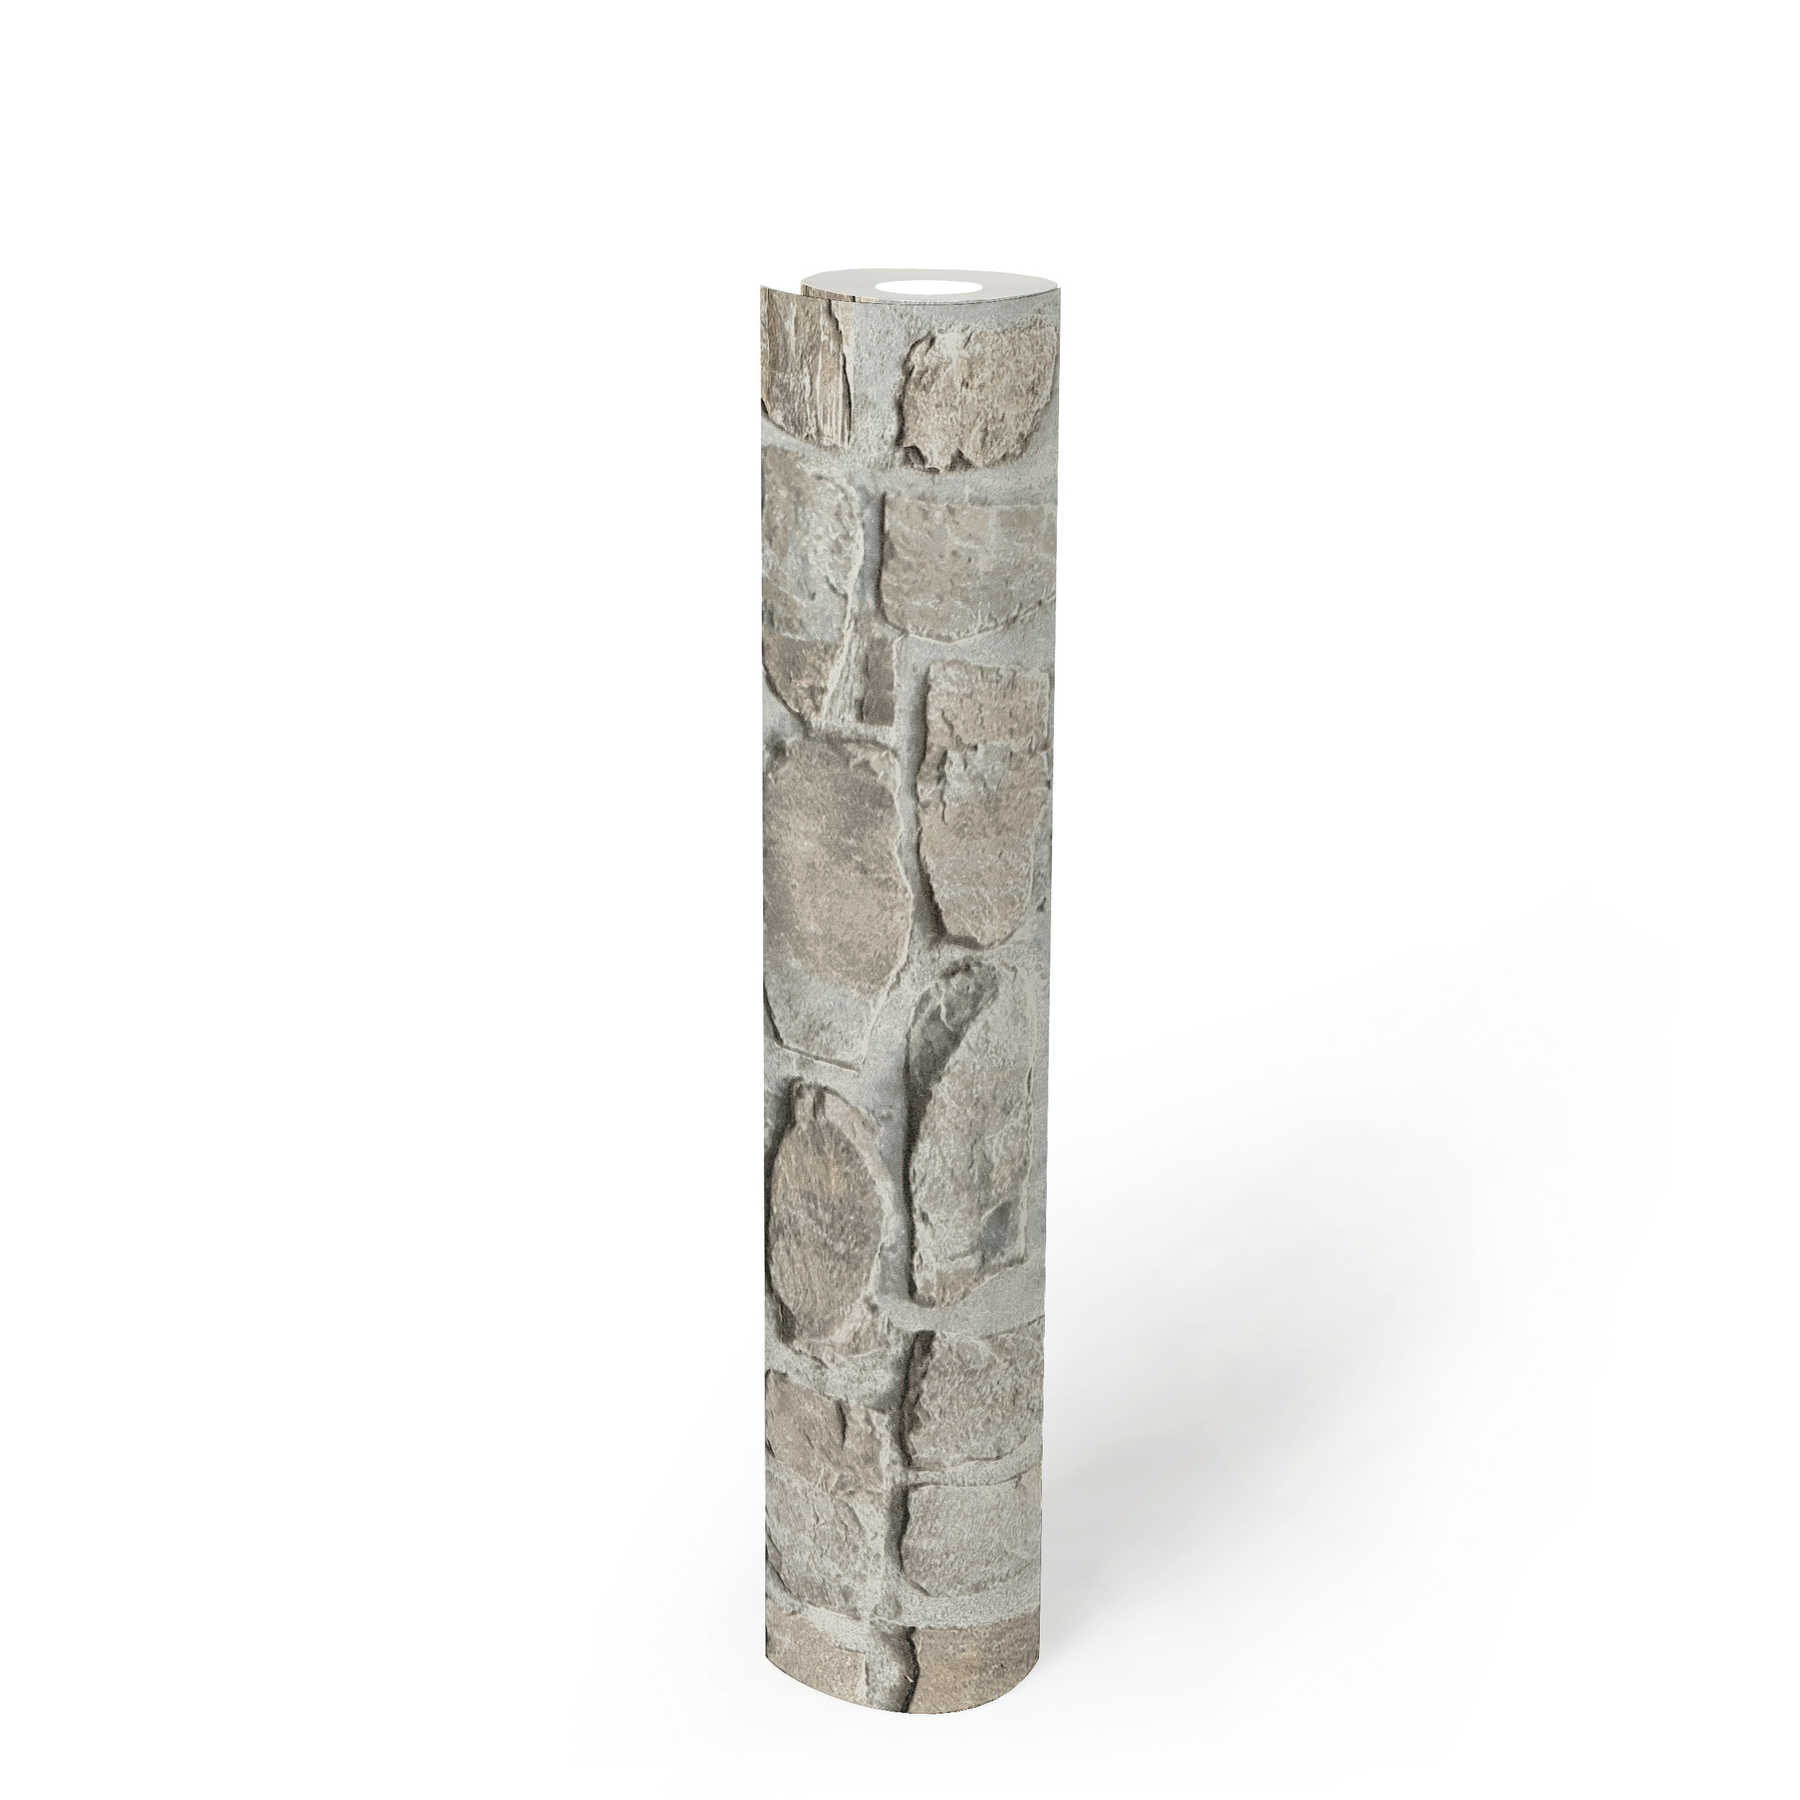             Papel pintado de piedra con mampostería de piedra natural - Gris, Beige
        